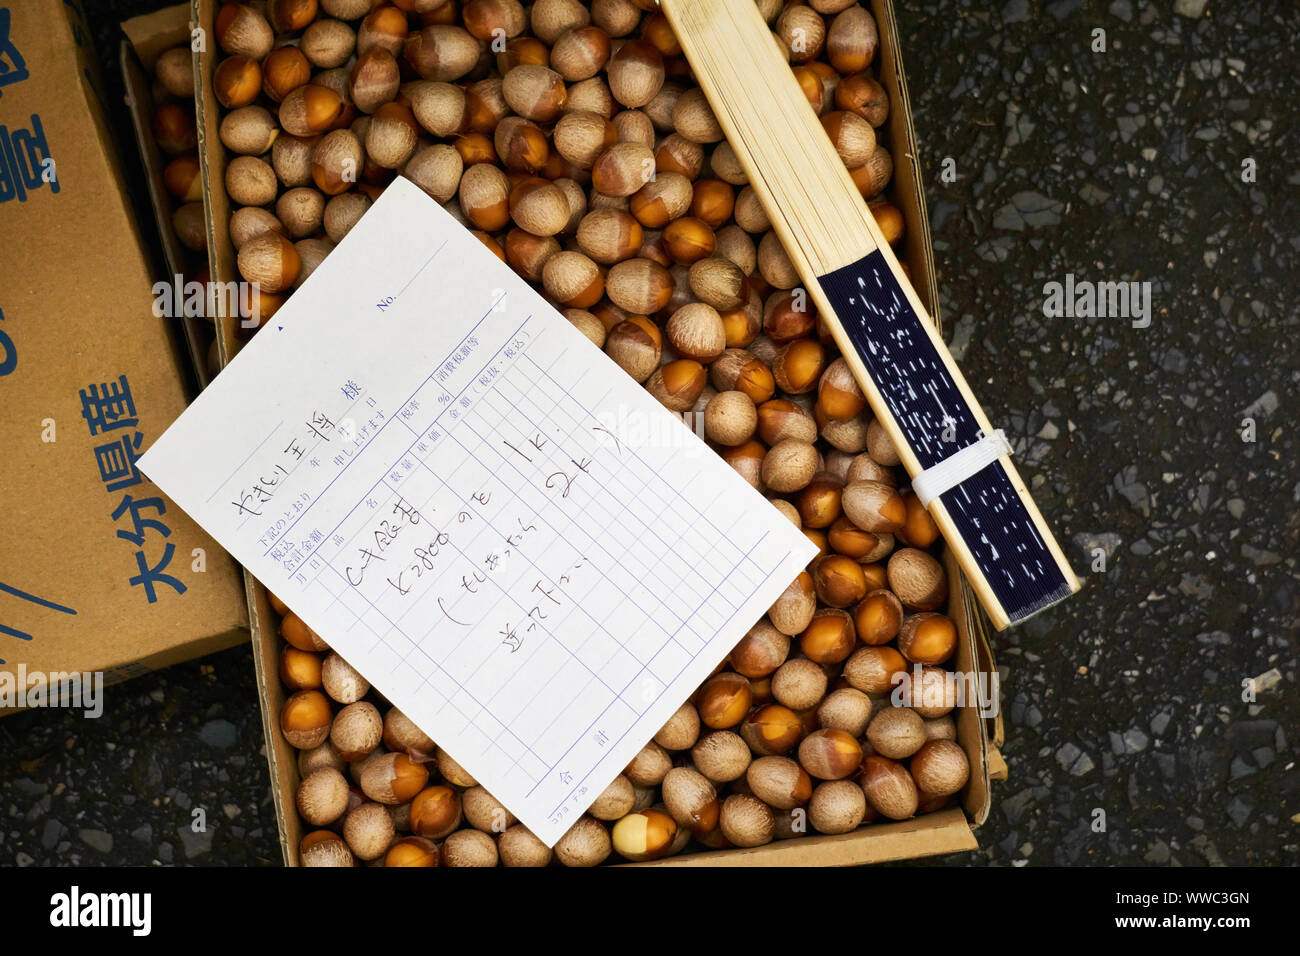 Une boîte en carton remplie de ginnan (noix de ginkgo) et un bon de commande demandant un ou deux kilogrammes de noix à un grossiste du marché de Tsukiji. Banque D'Images